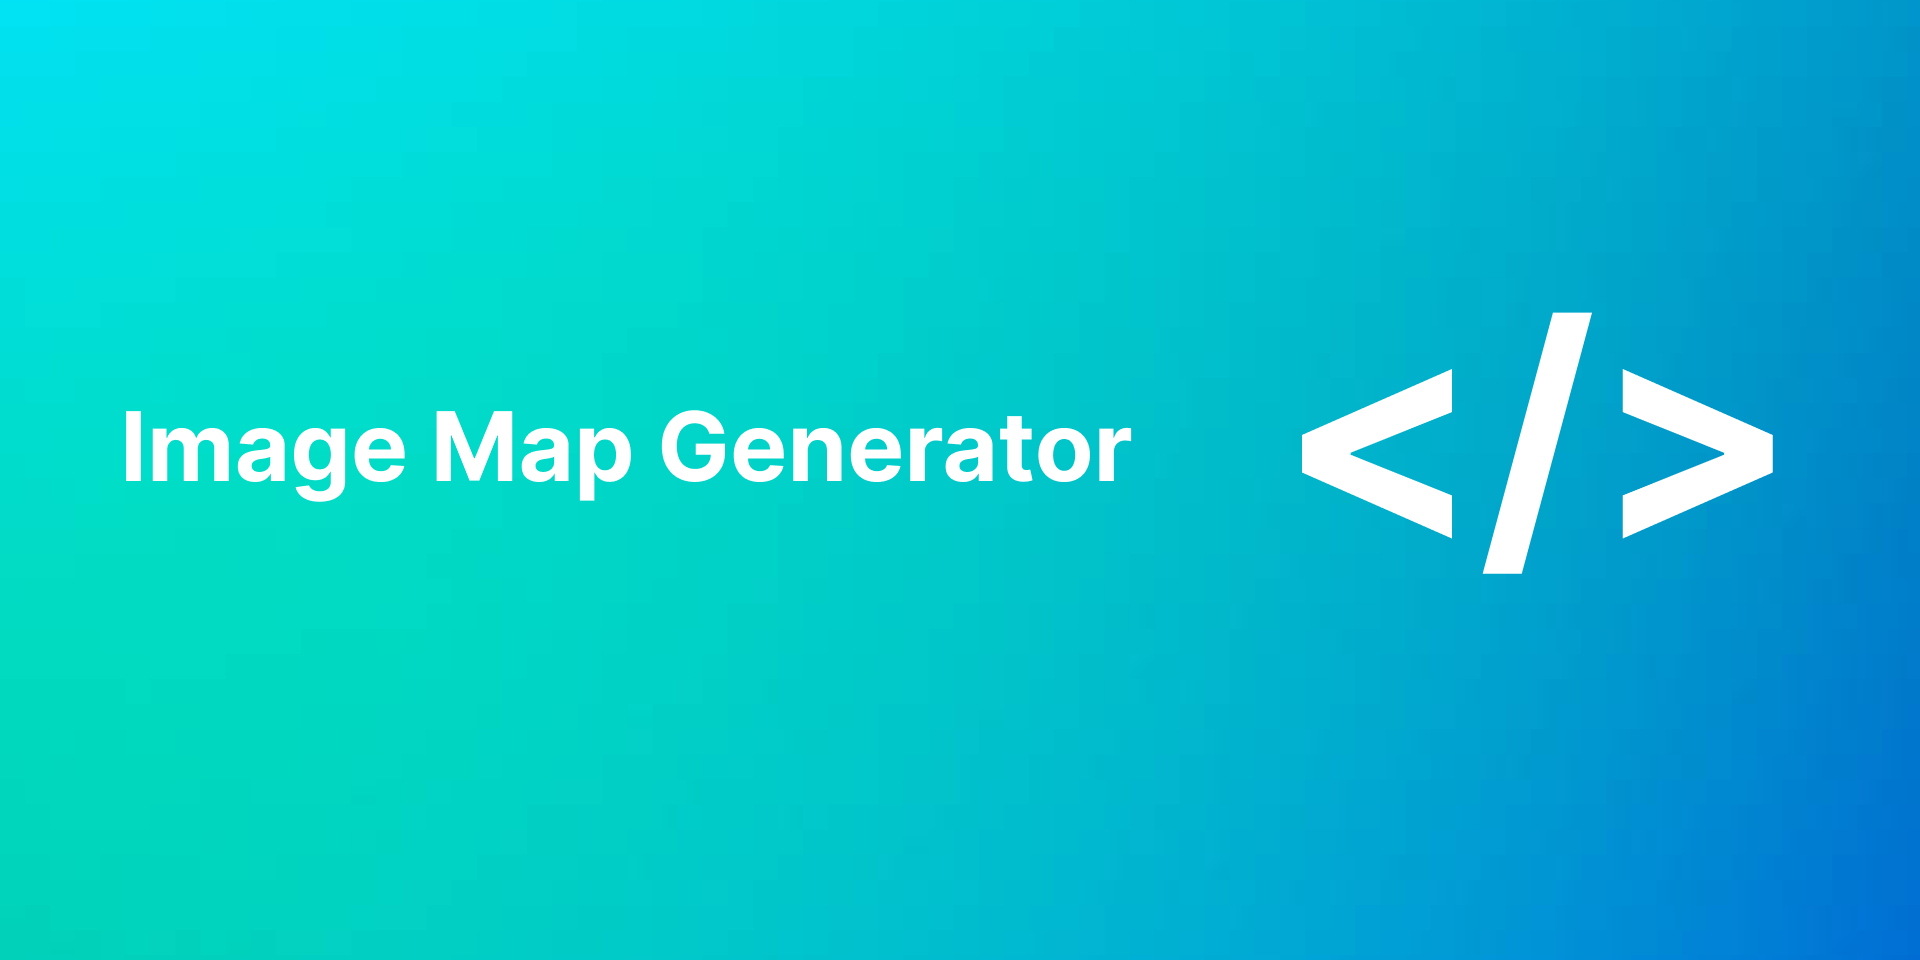 установить плагин для Фигмы Image Map Generator